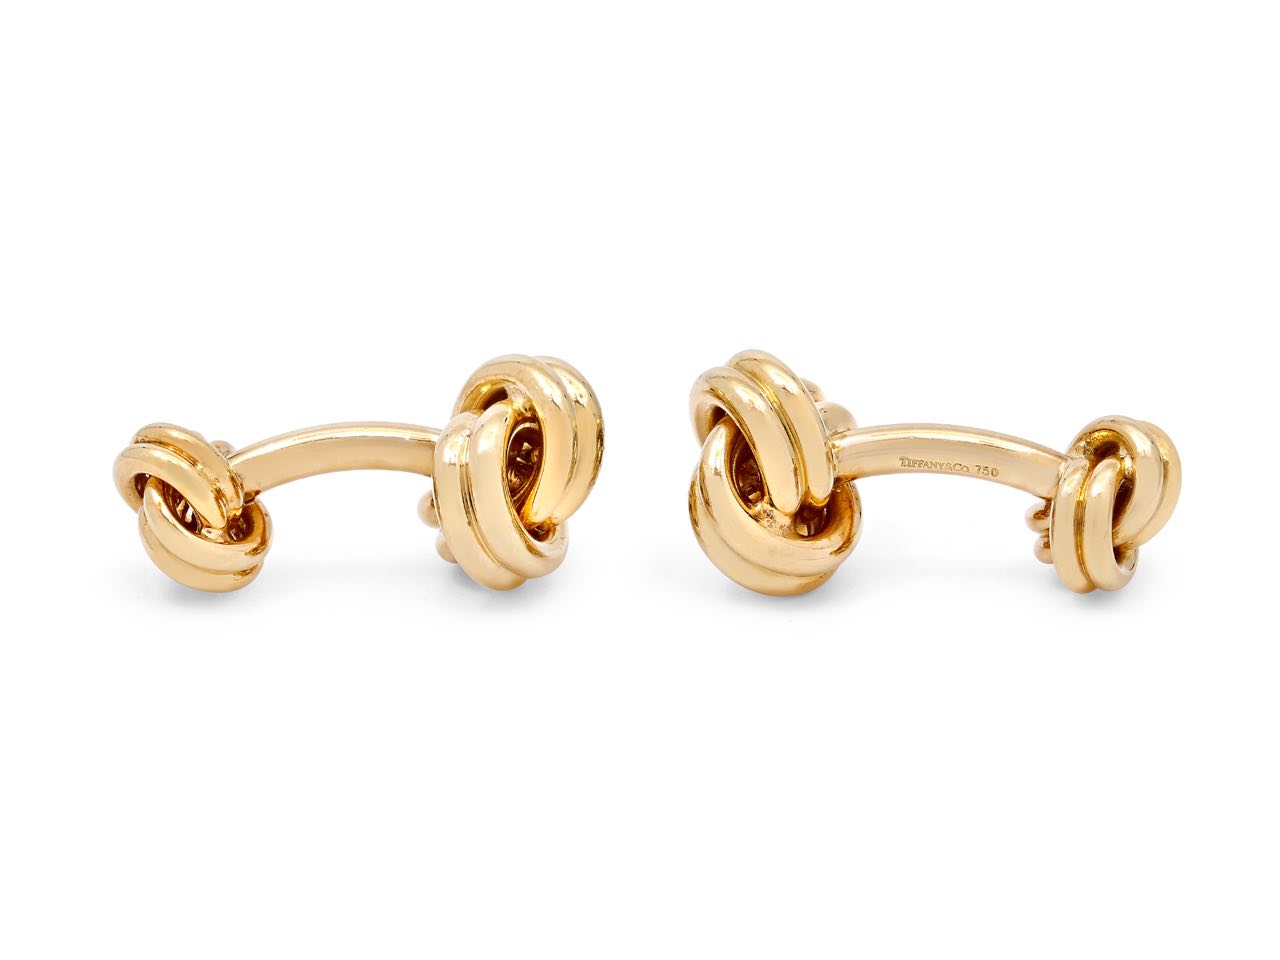 Tiffany & Co. Knot Cufflinks in 18K Gold